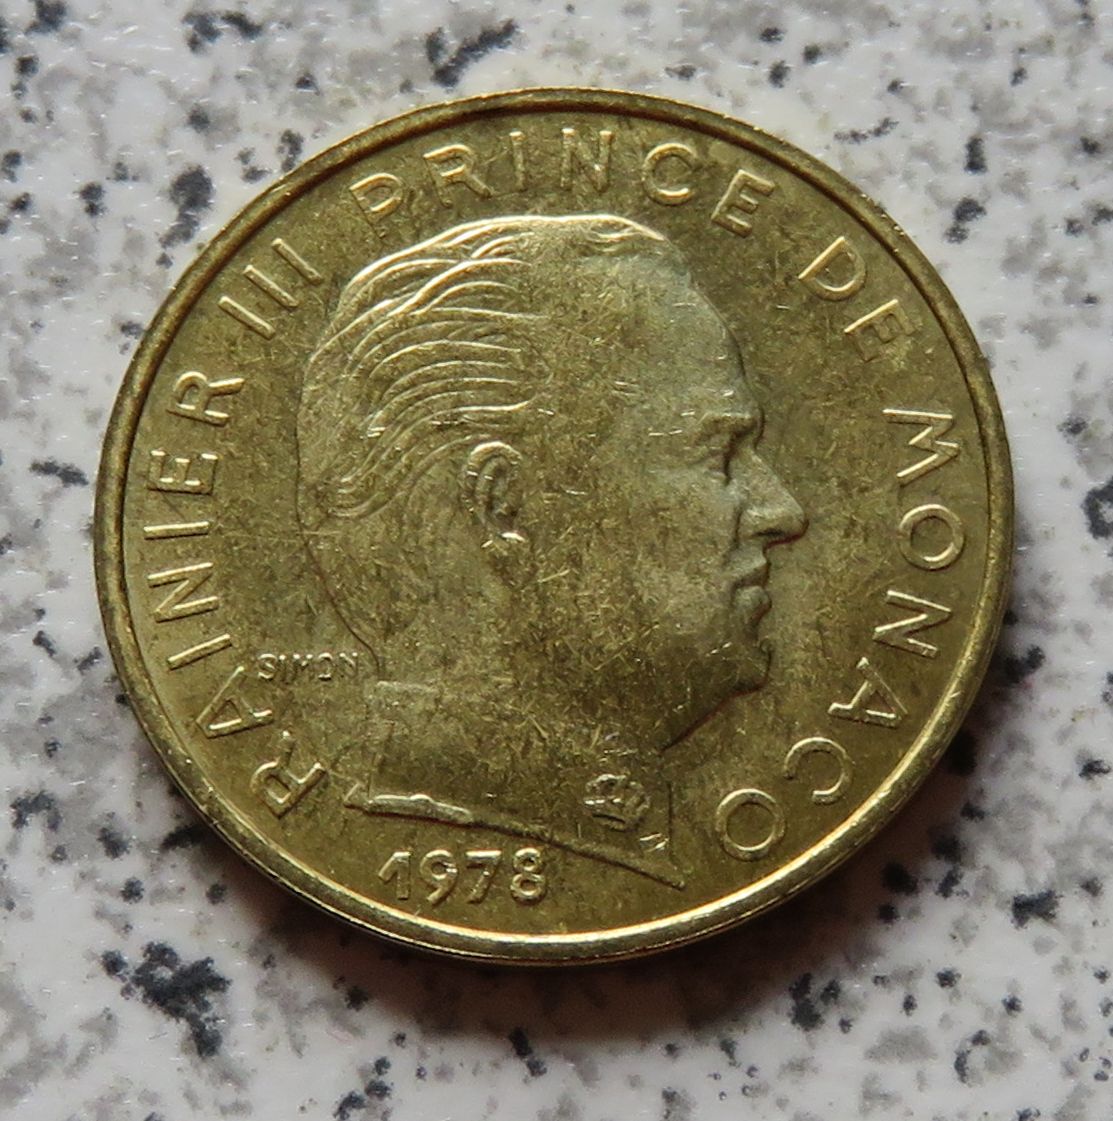  Monaco 10 Centimes 1978   